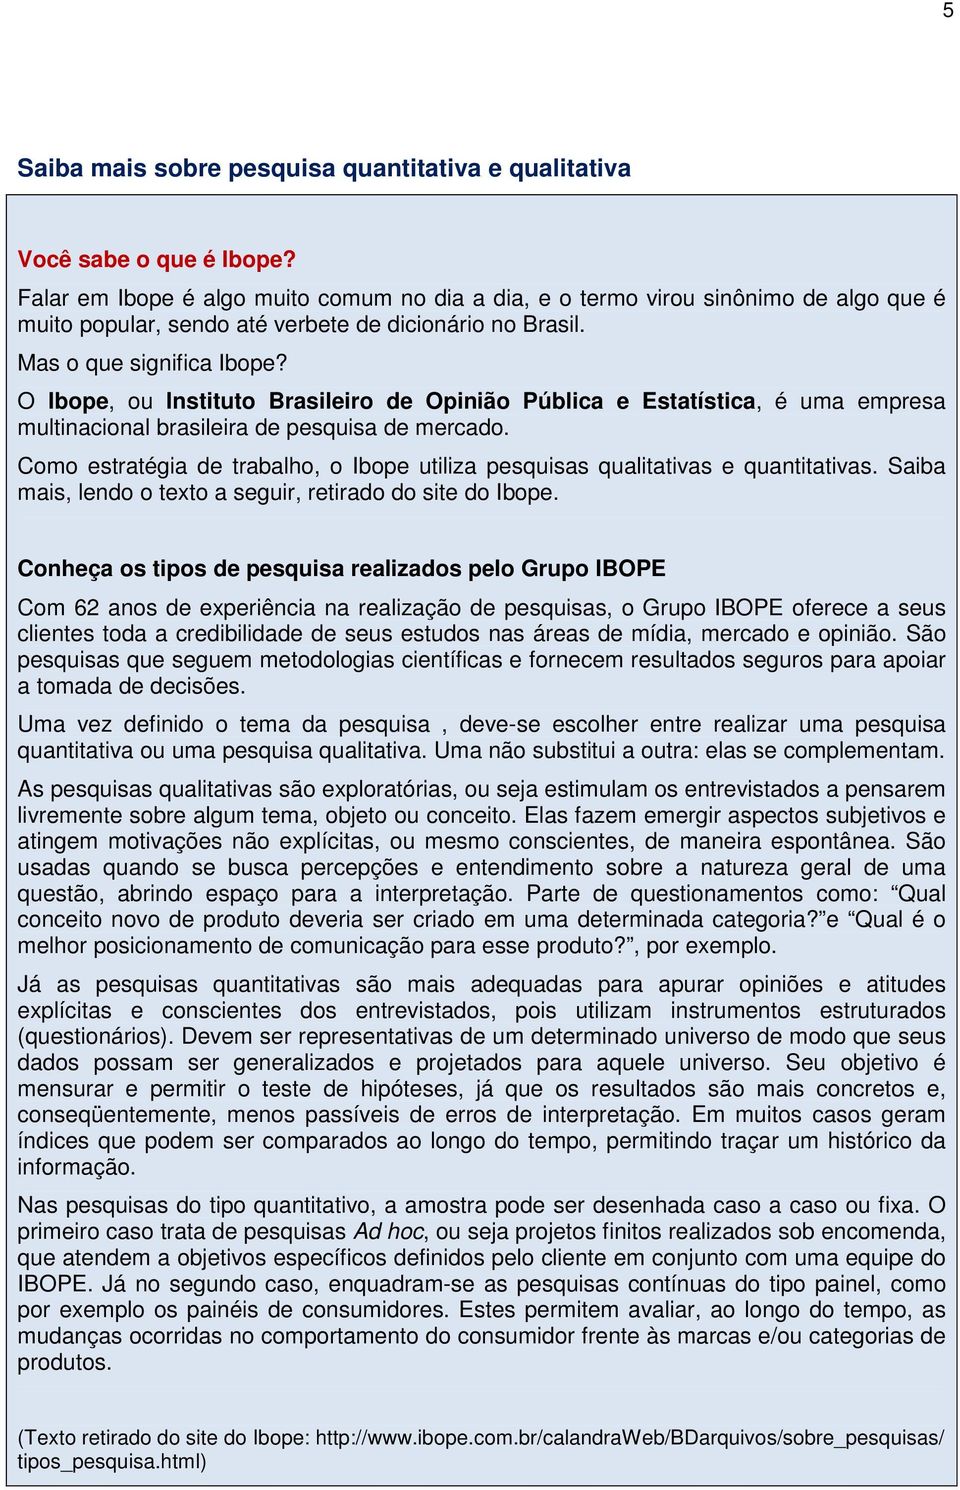 O Ibope, ou Instituto Brasileiro de Opinião Pública e Estatística, é uma empresa multinacional brasileira de pesquisa de mercado.